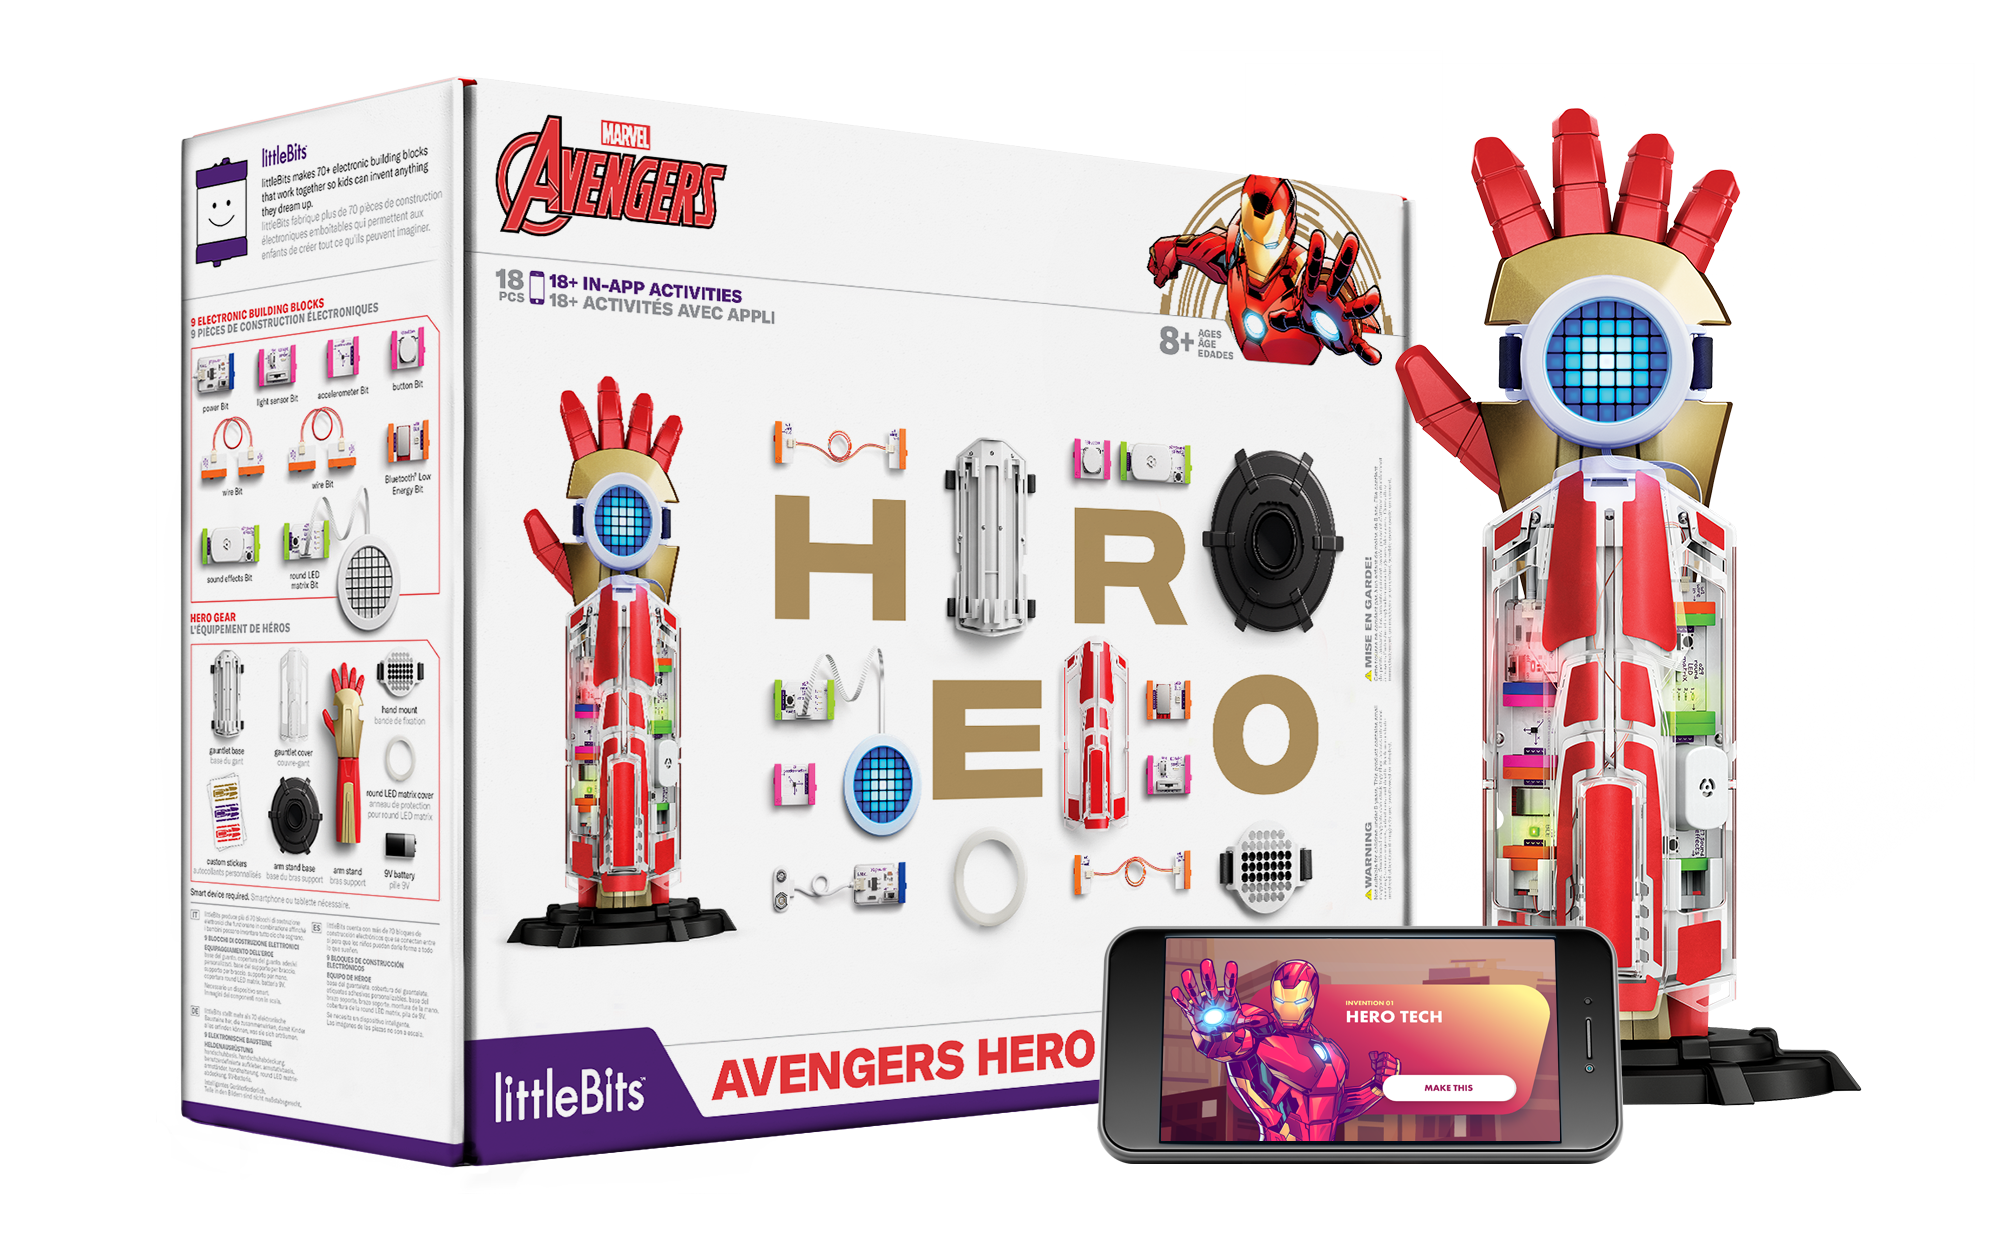 Avengers Hero Inventor Kit